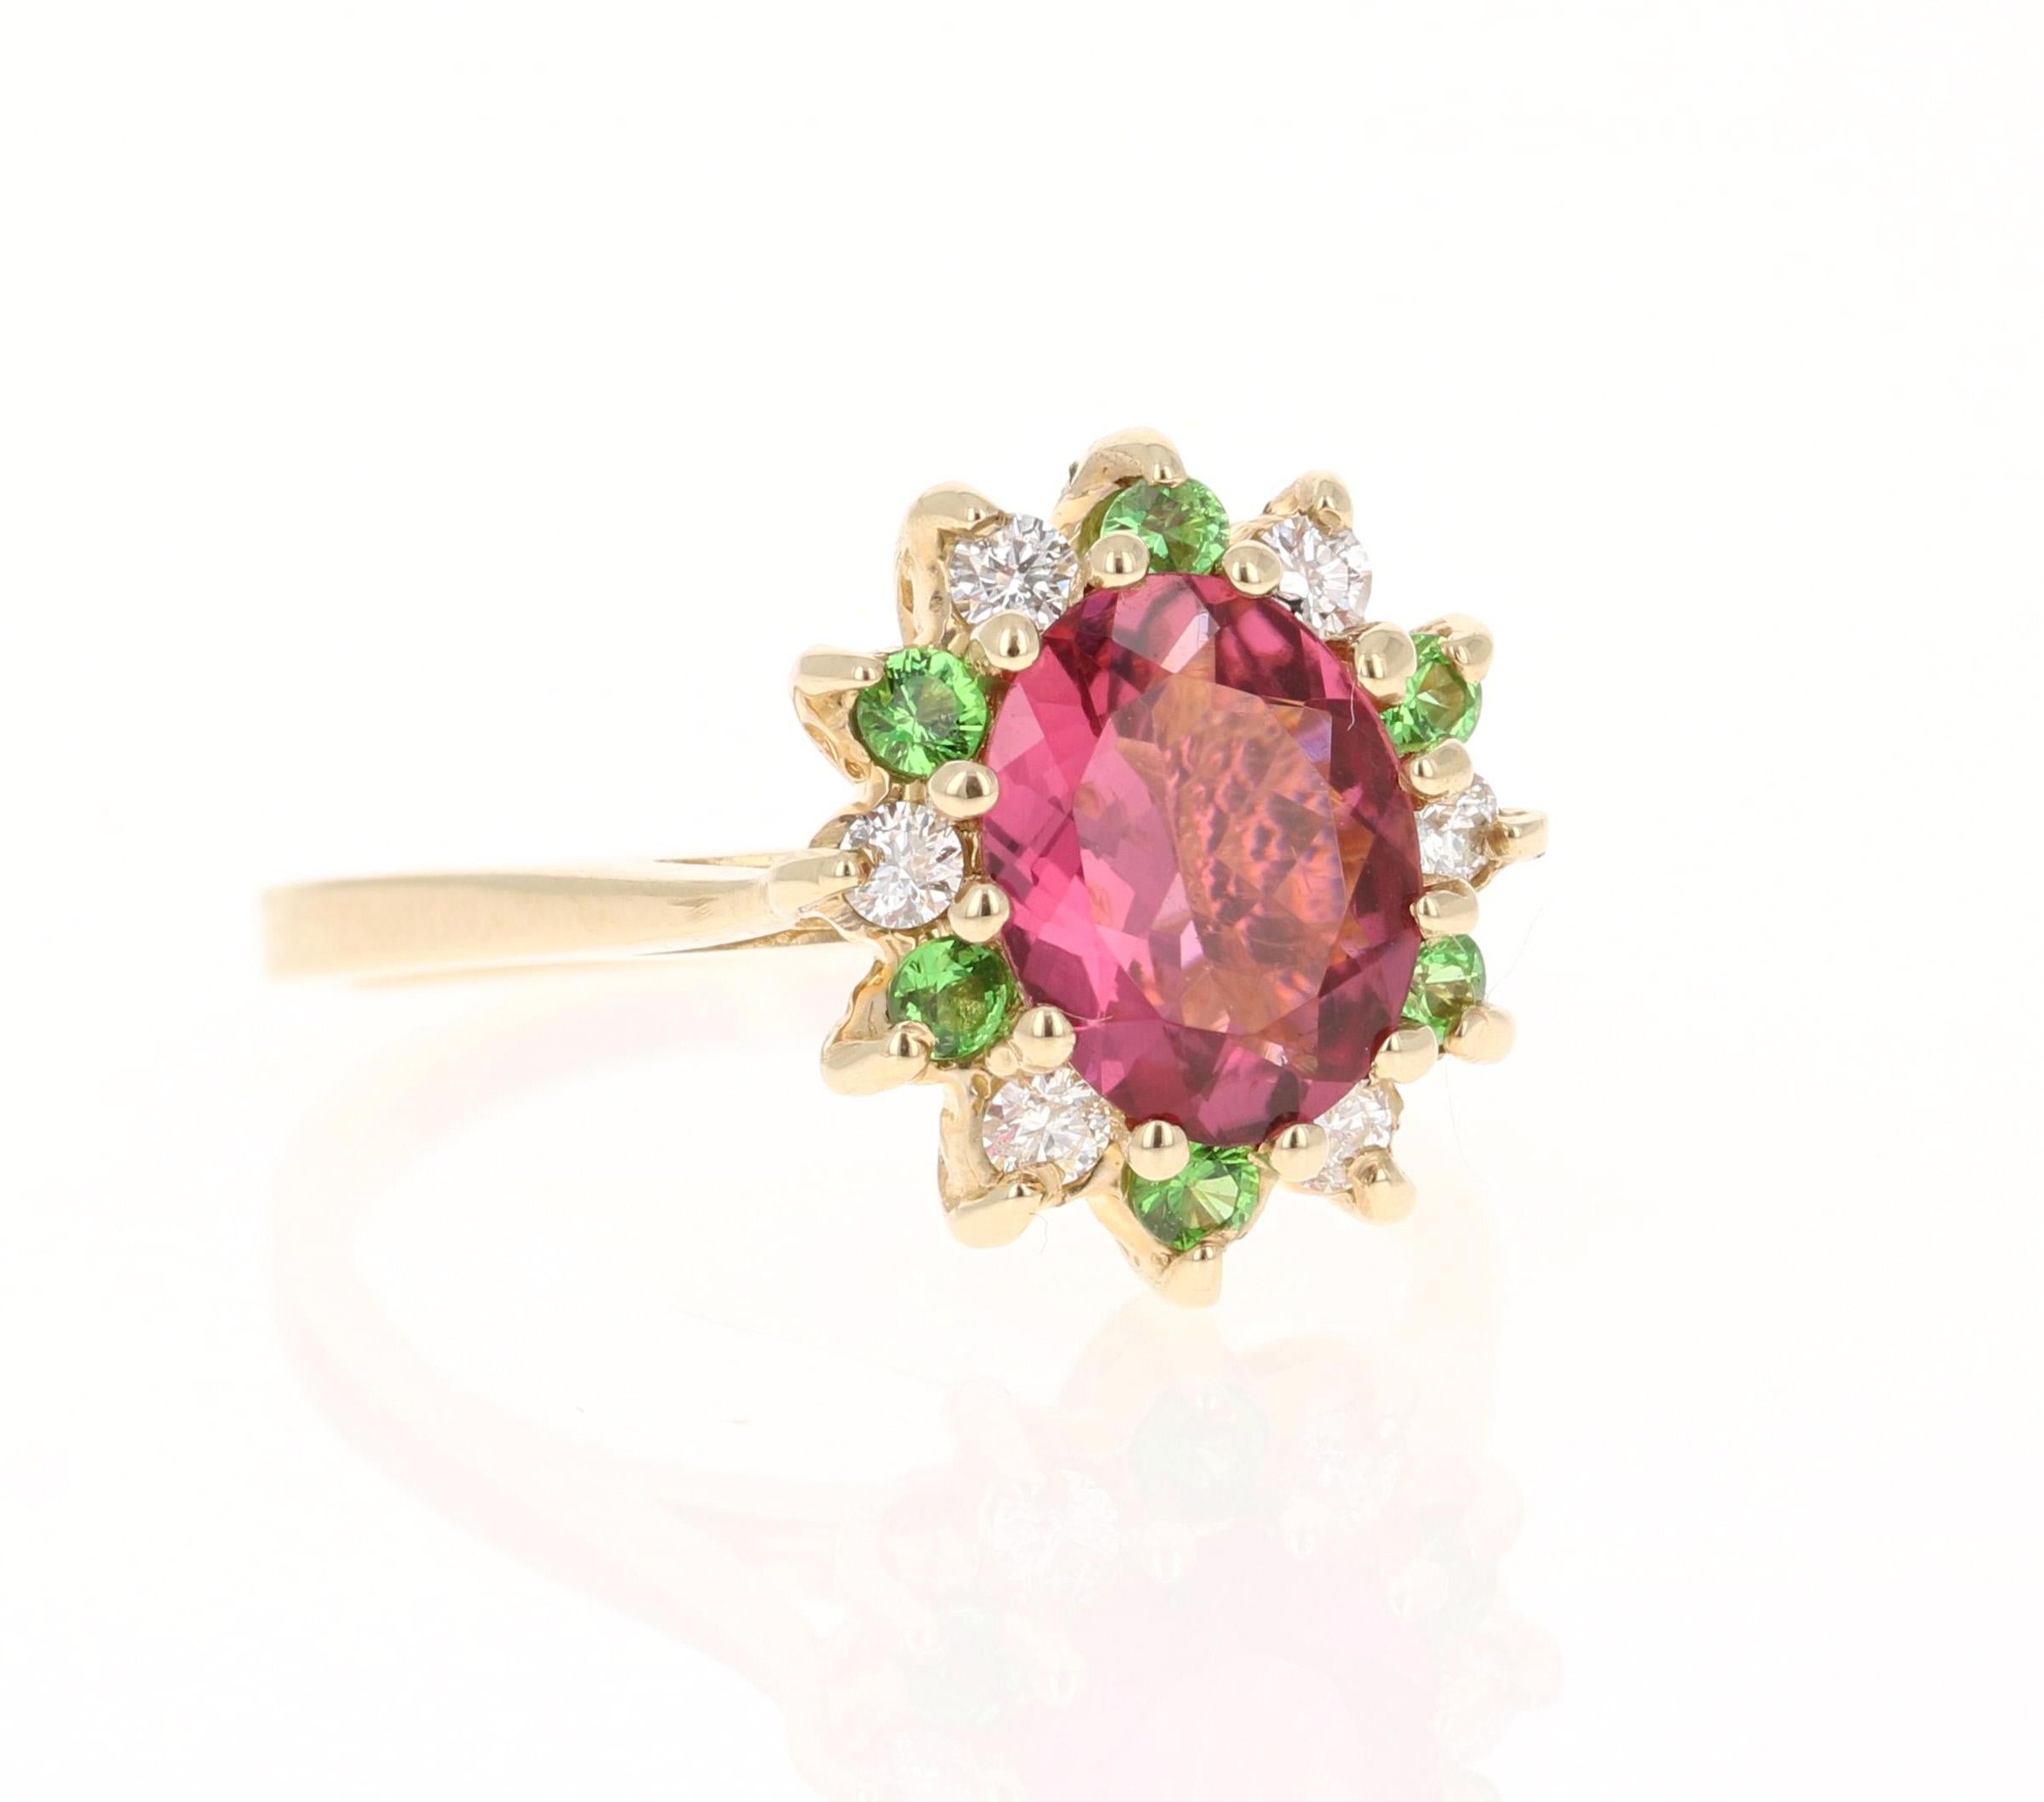 Dieser Ring hat eine wunderschöne Oval Cut Pink Turmalin, die 1,59 Karat wiegt. Um den Turmalin herum schwebt ein einzigartiger Halo aus Tsavoriten mit einem Gewicht von 0,20 Karat und 6 Diamanten im Rundschliff mit einem Gewicht von 0,18 Karat.